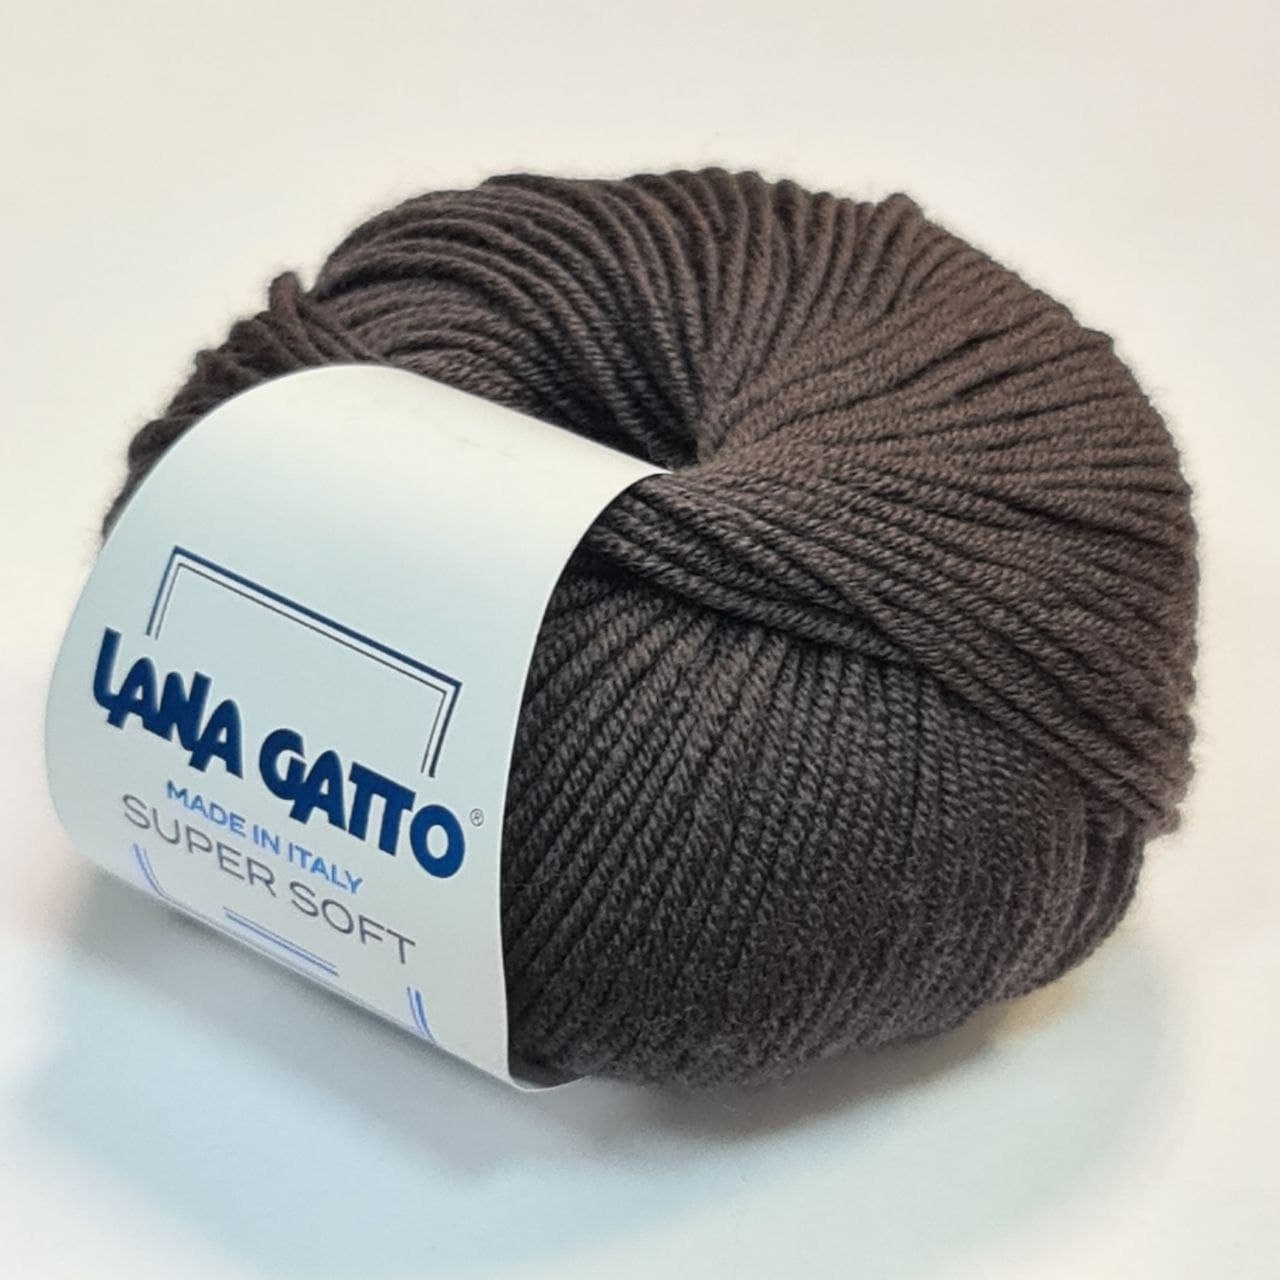 Купить пряжу lana gatto